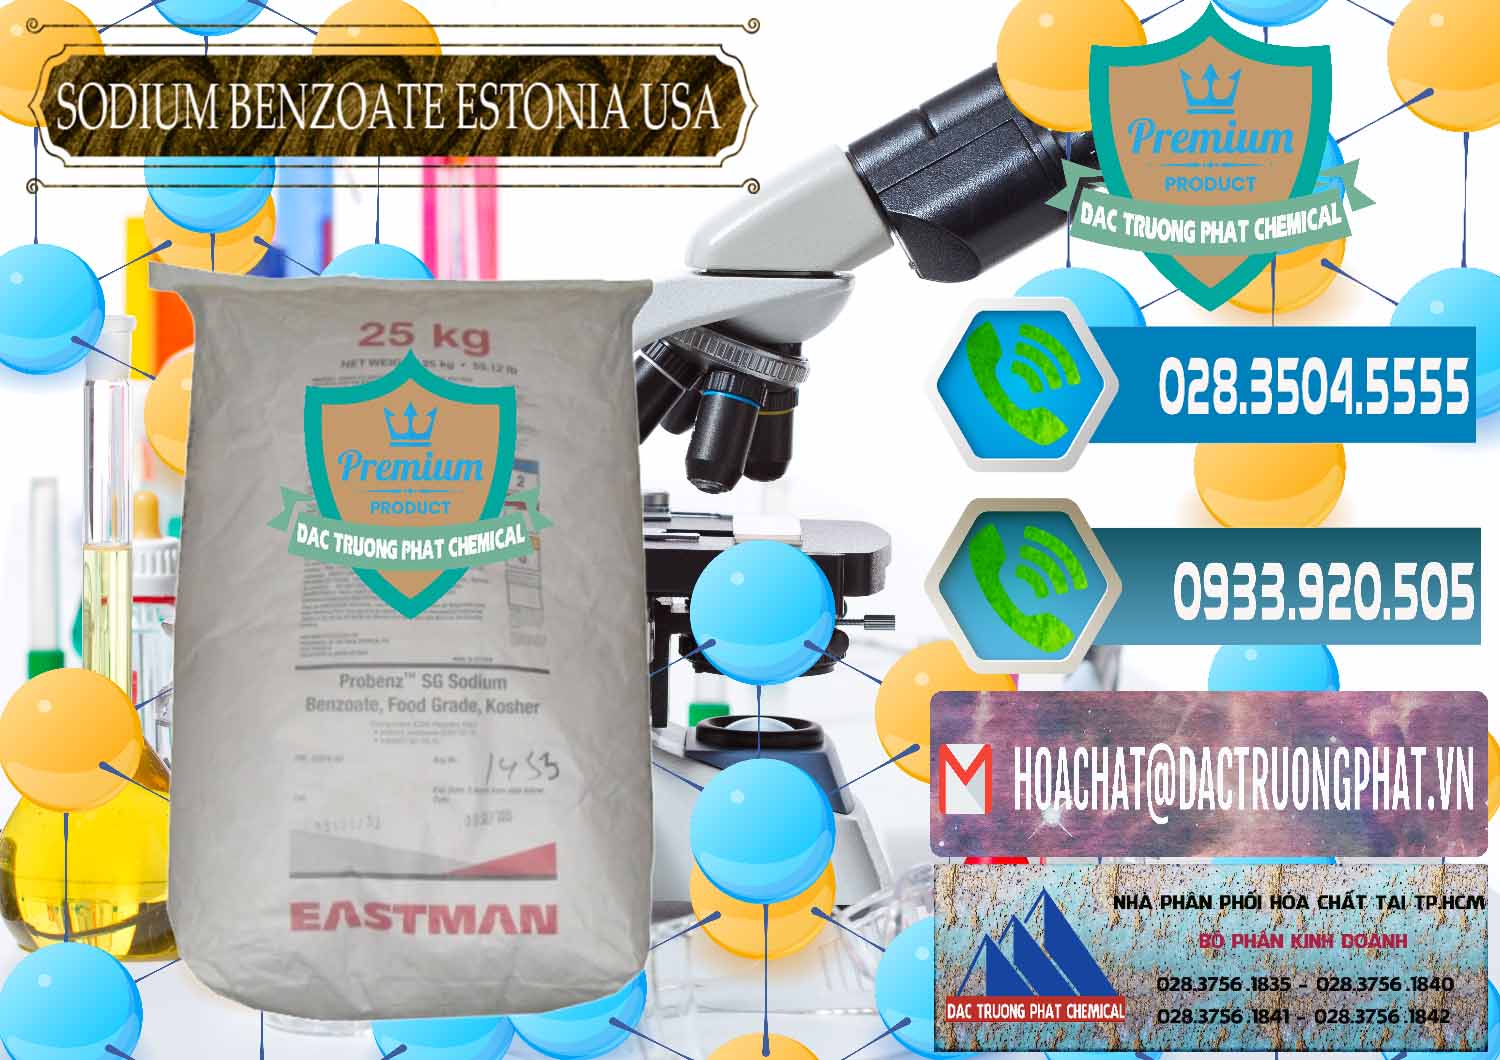 Chuyên cung cấp - bán Sodium Benzoate - Mốc Bột Estonia Mỹ USA - 0468 - Cung ứng & phân phối hóa chất tại TP.HCM - congtyhoachat.net